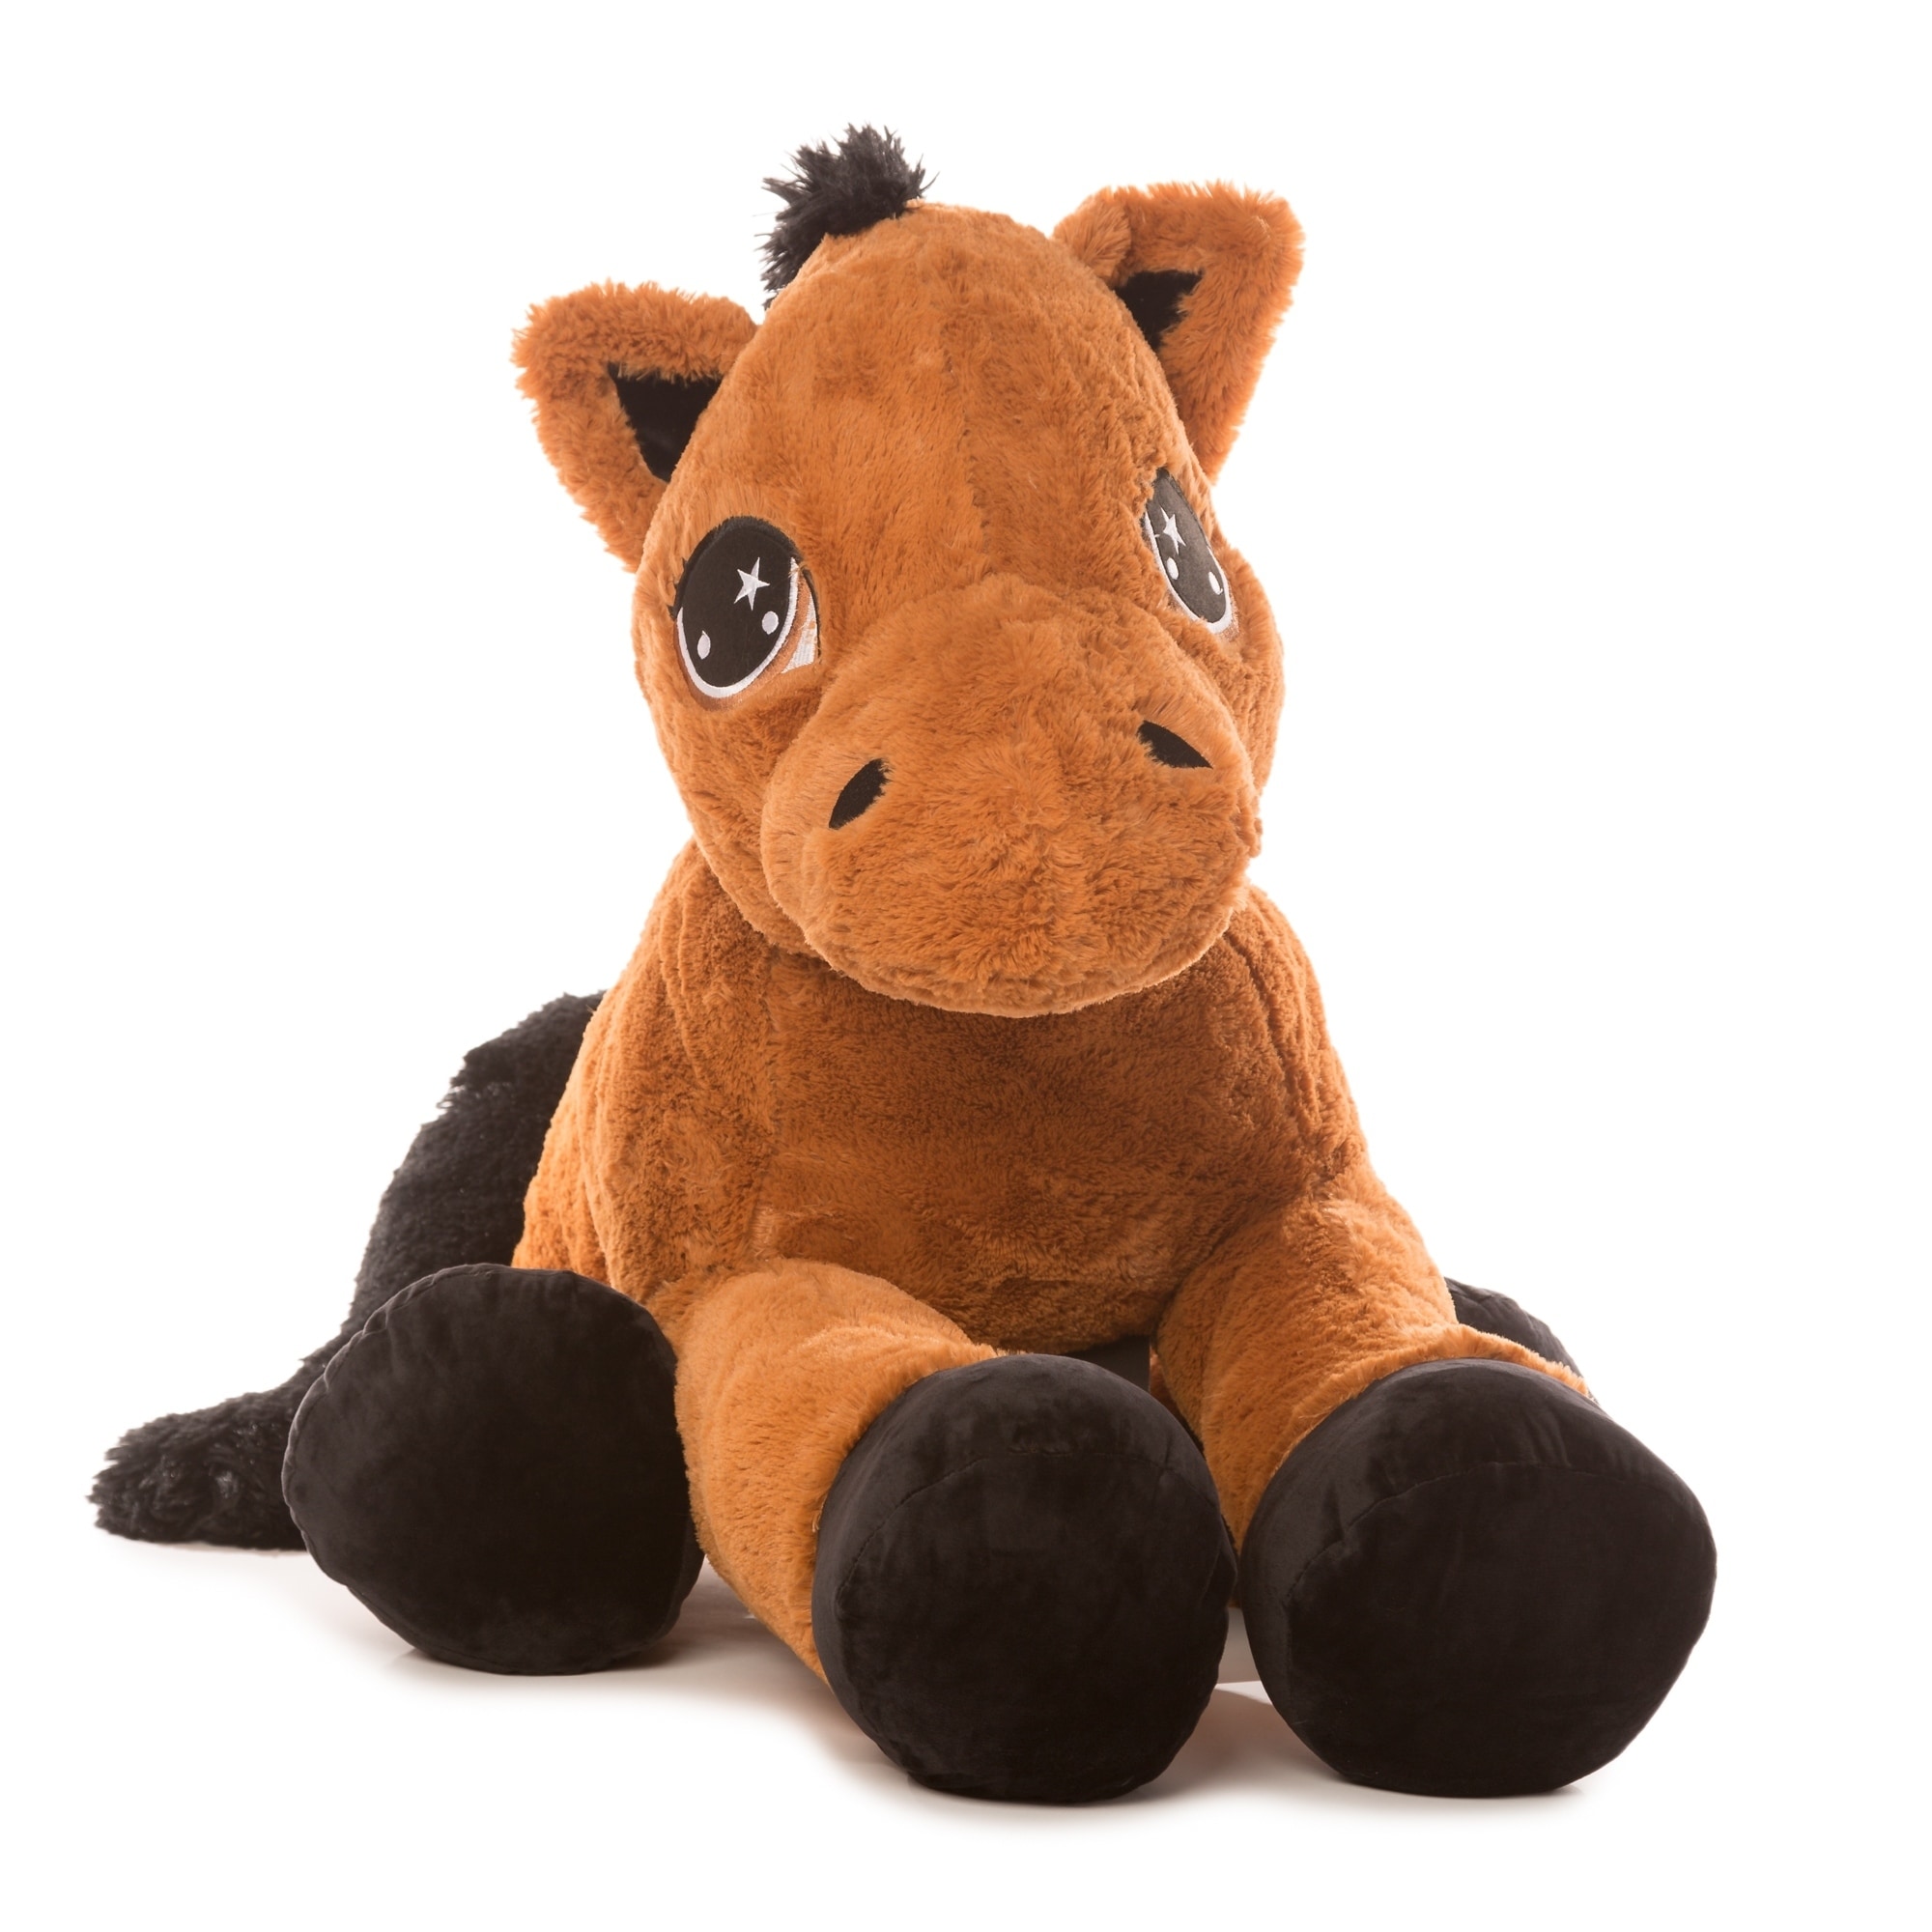 giant stuffed horse